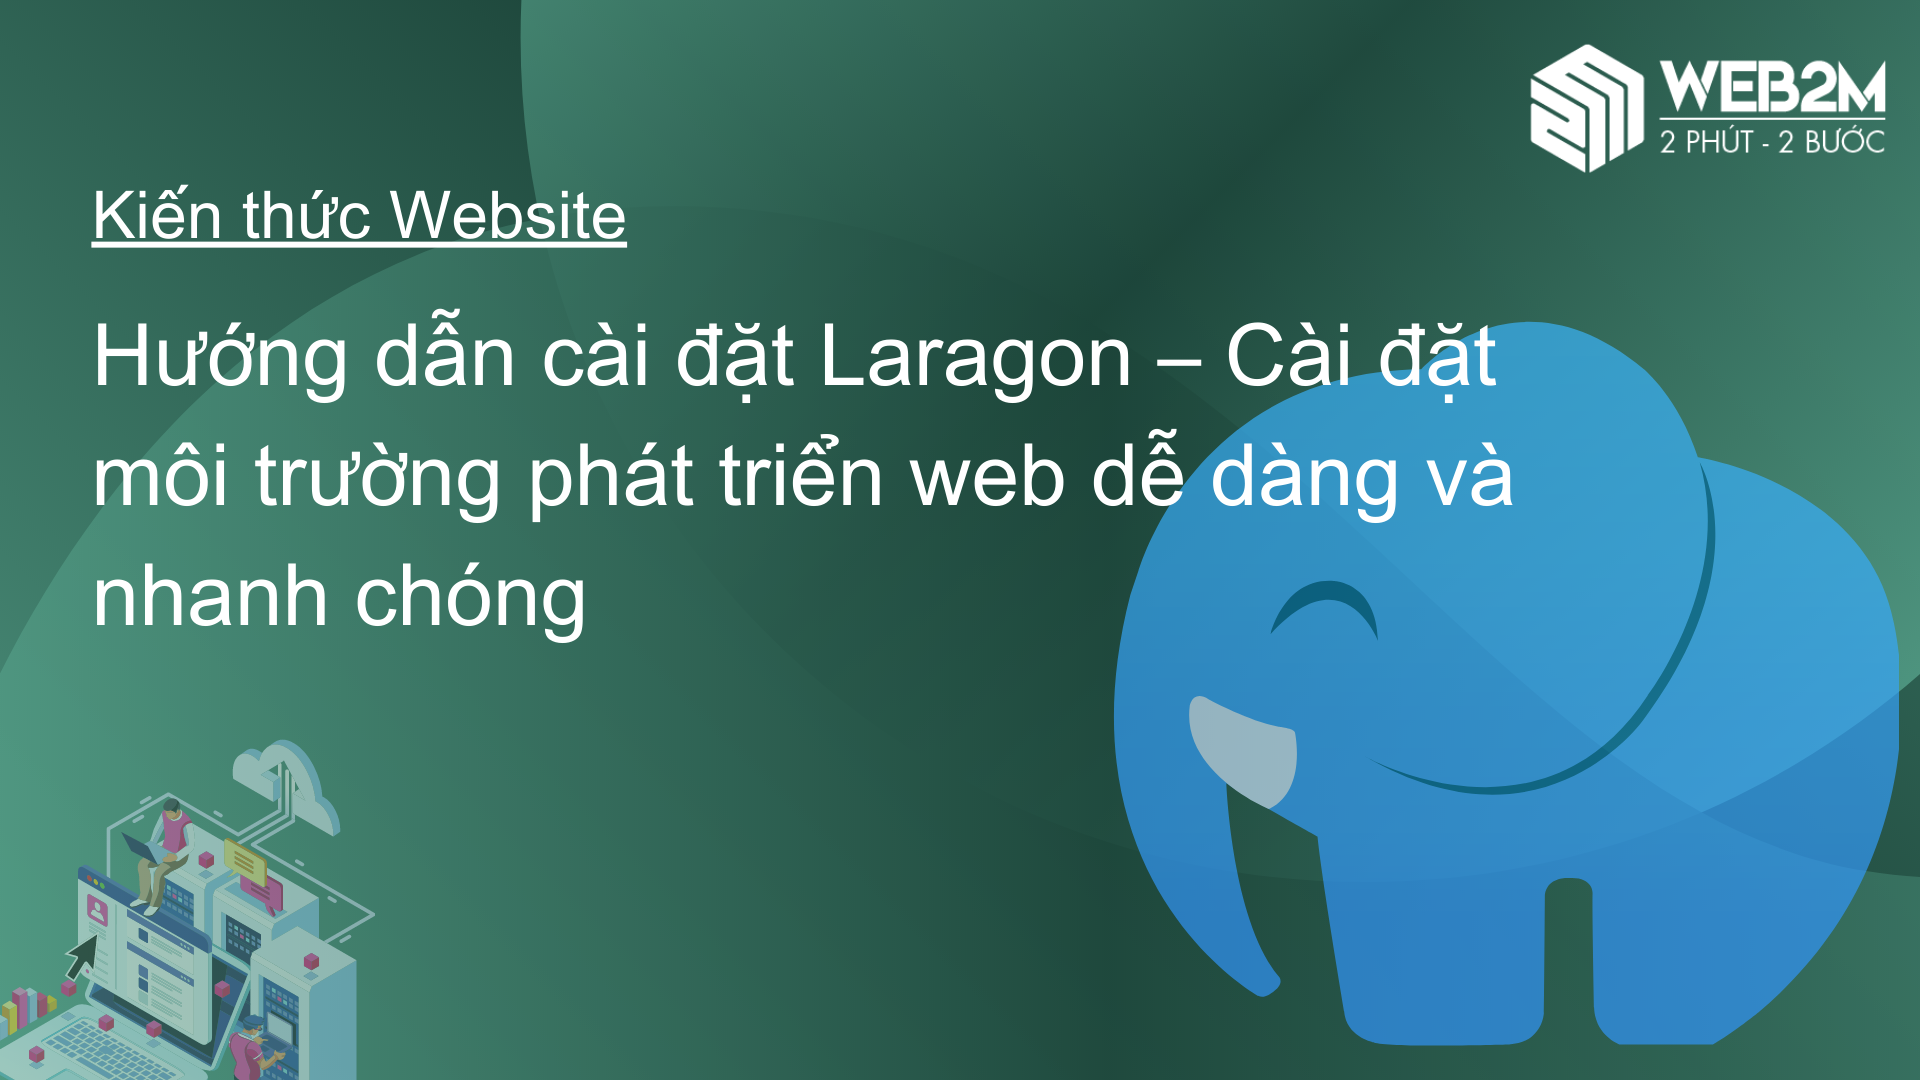 Hướng dẫn cài đặt Laragon – Cài đặt môi trường phát triển web dễ dàng và nhanh chóng